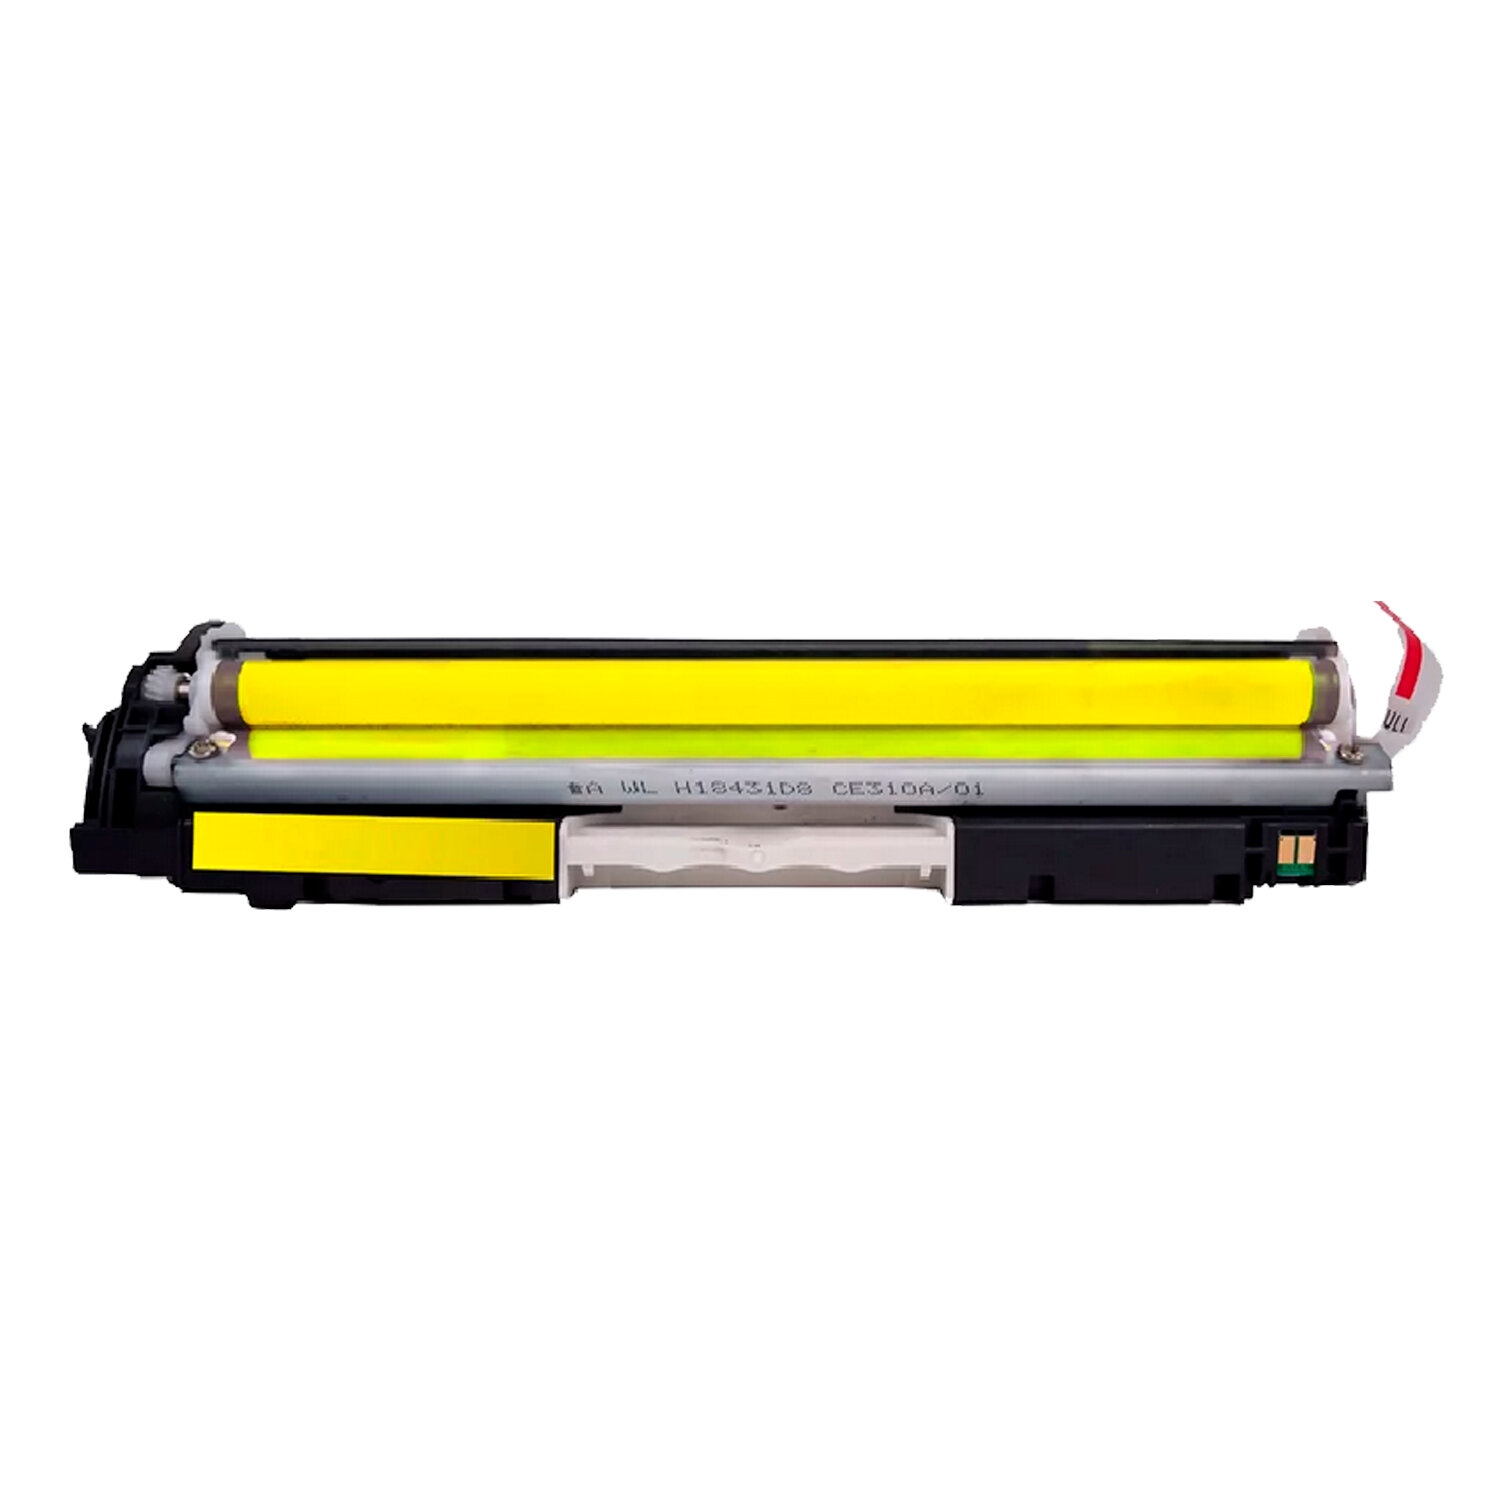 картинка Картридж лазерный SONNEN, HP CE312A/CF352A, для CLJ CP1025, Yellow, 1000 стр. от магазина Альфанит в Кунгуре